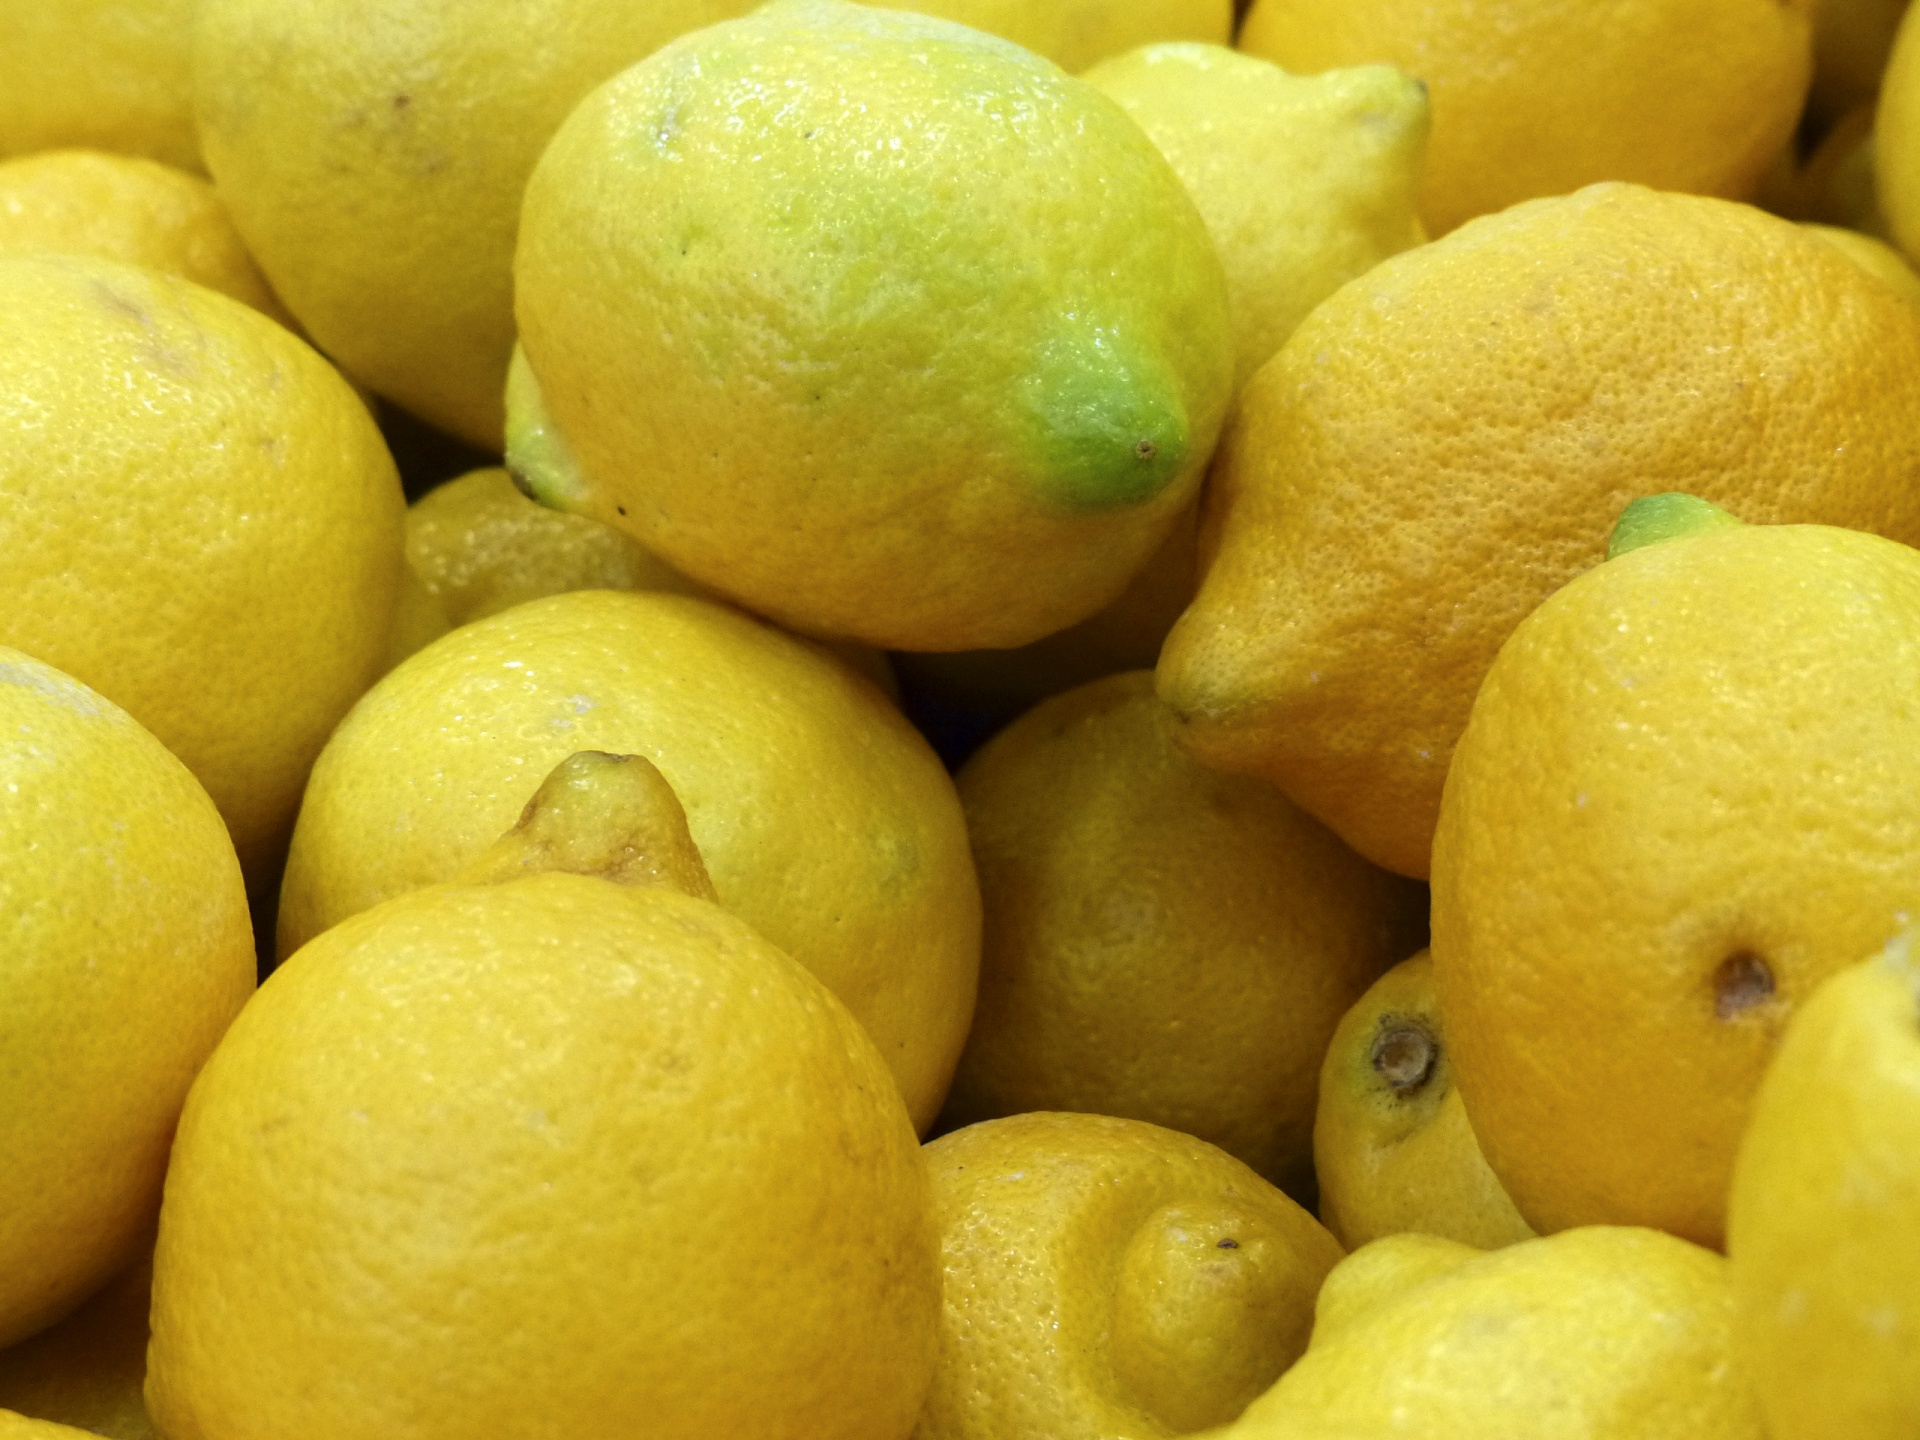 Los limones frescos